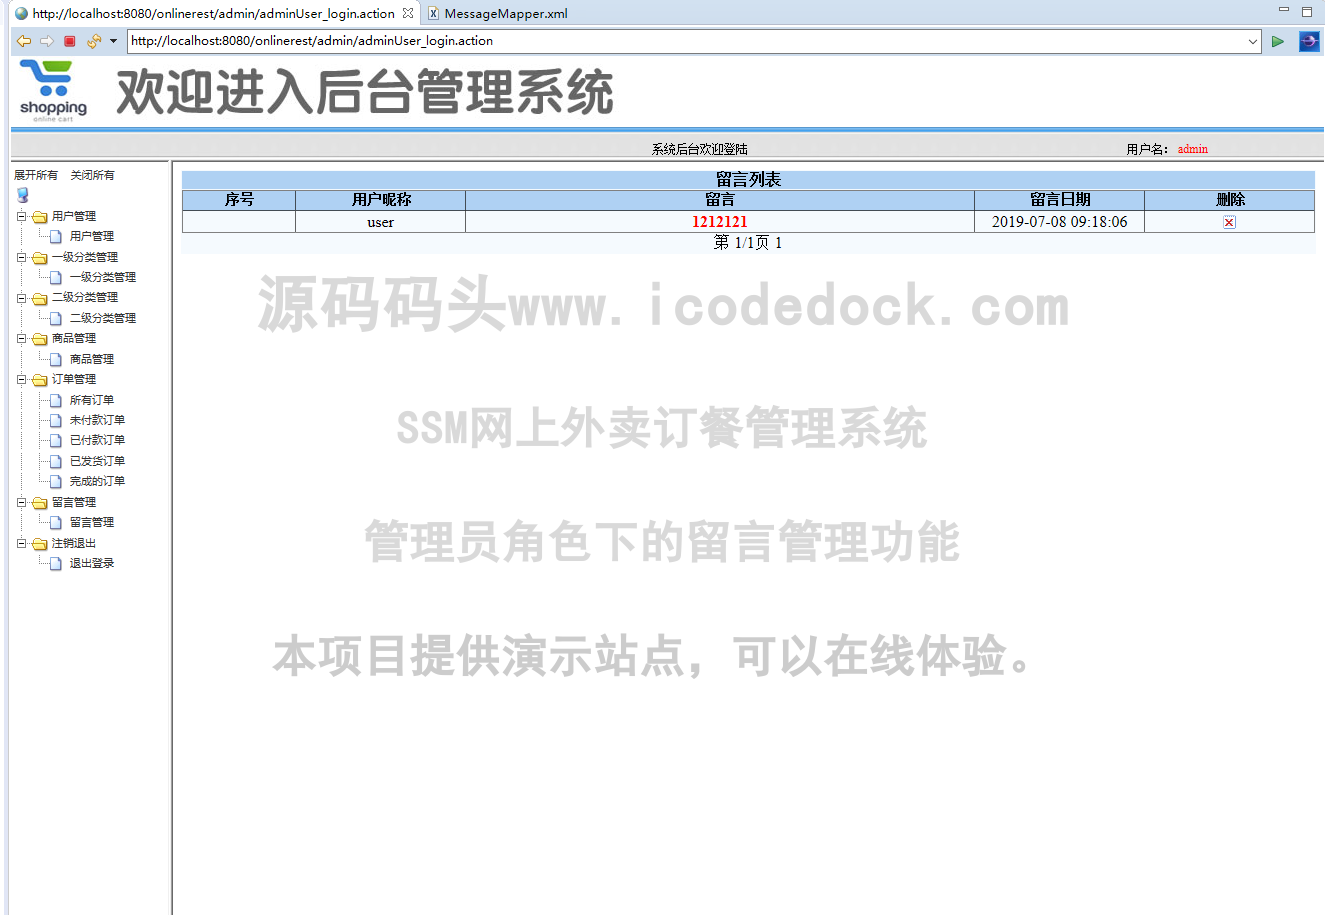 源码码头-SSM网上外卖订餐管理系统-管理员-留言管理